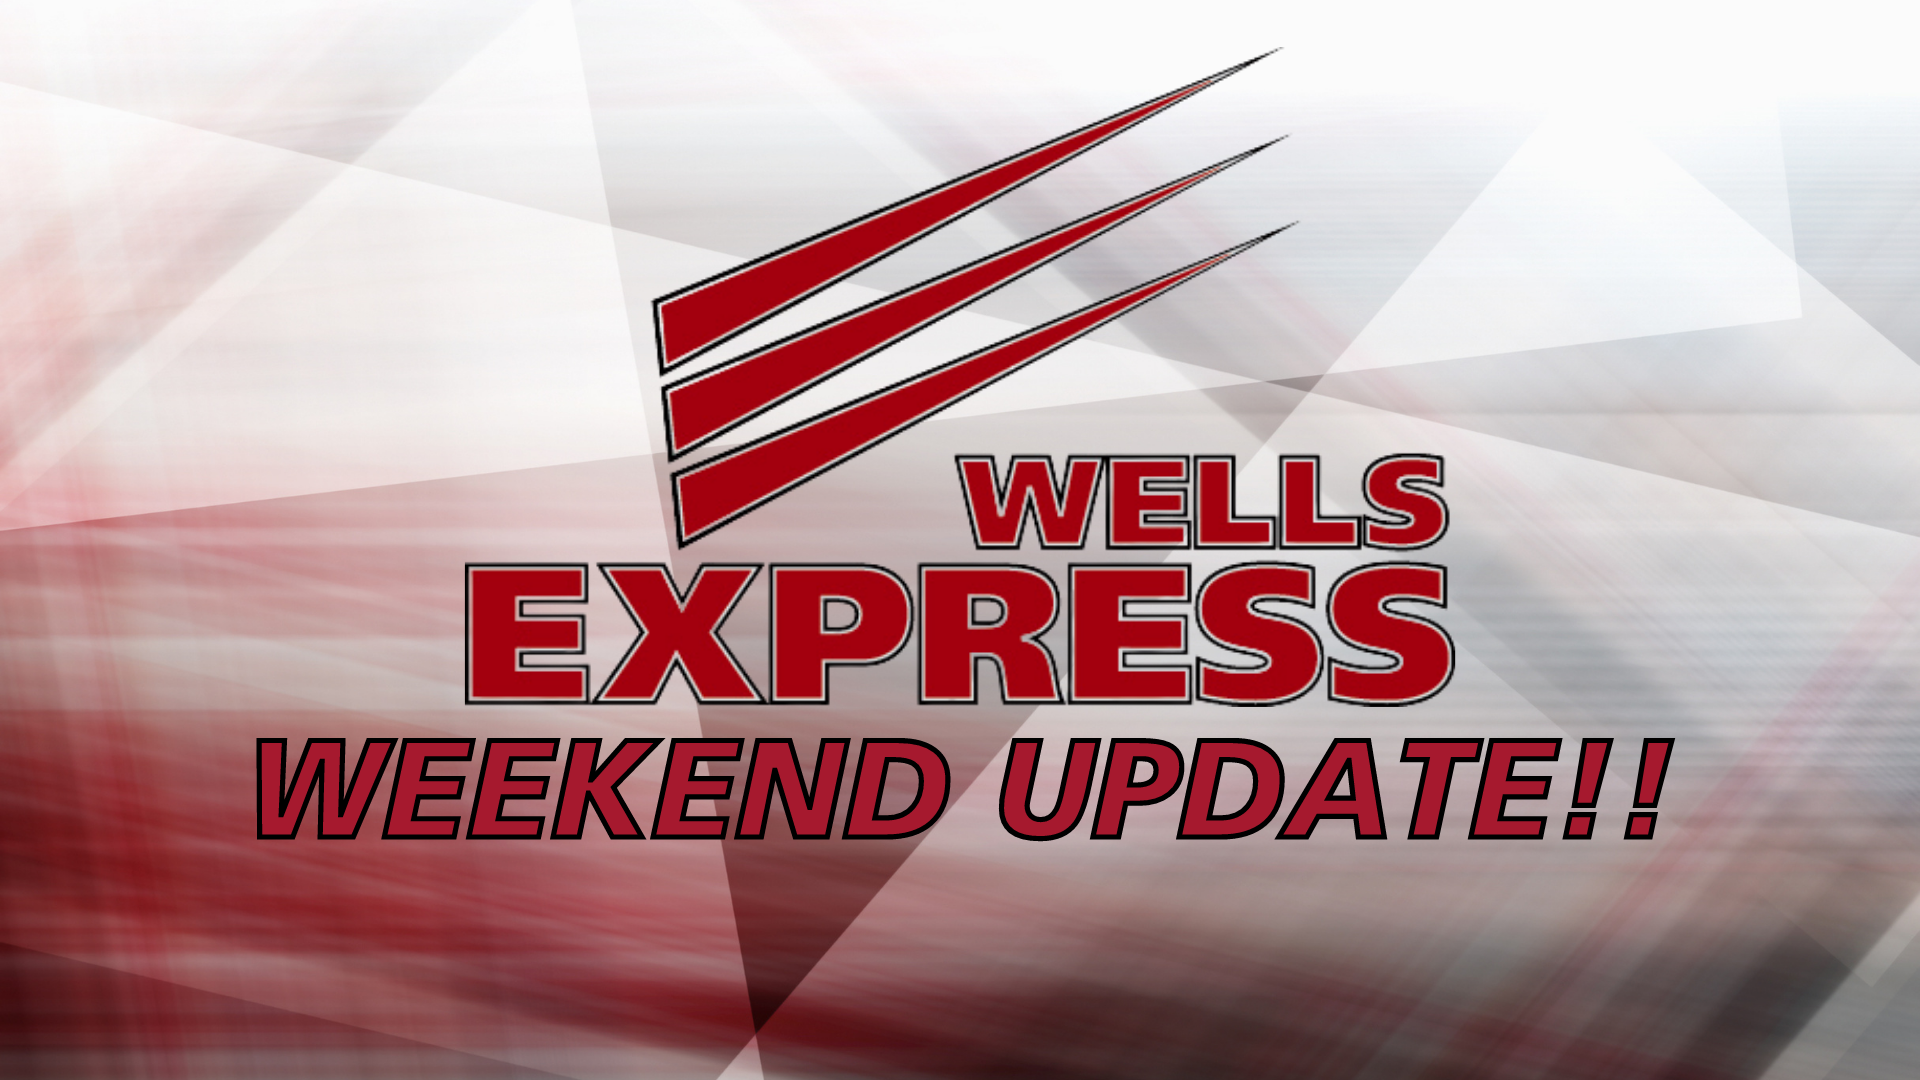 Express Weekend Scheduling Updates!